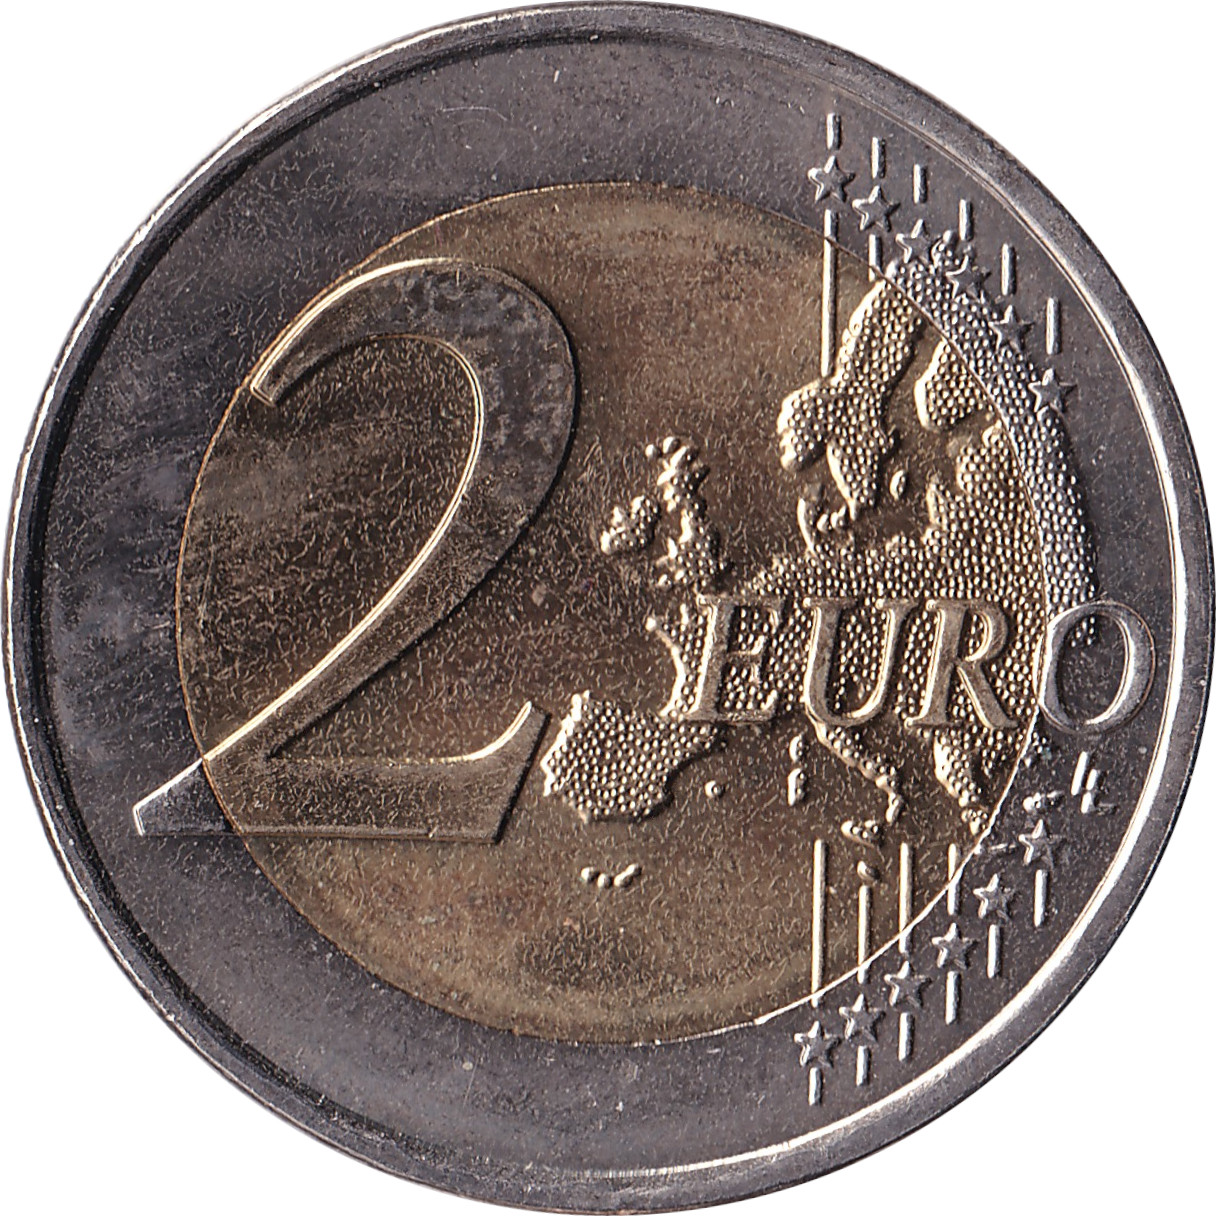 2 euro - Euro 2016